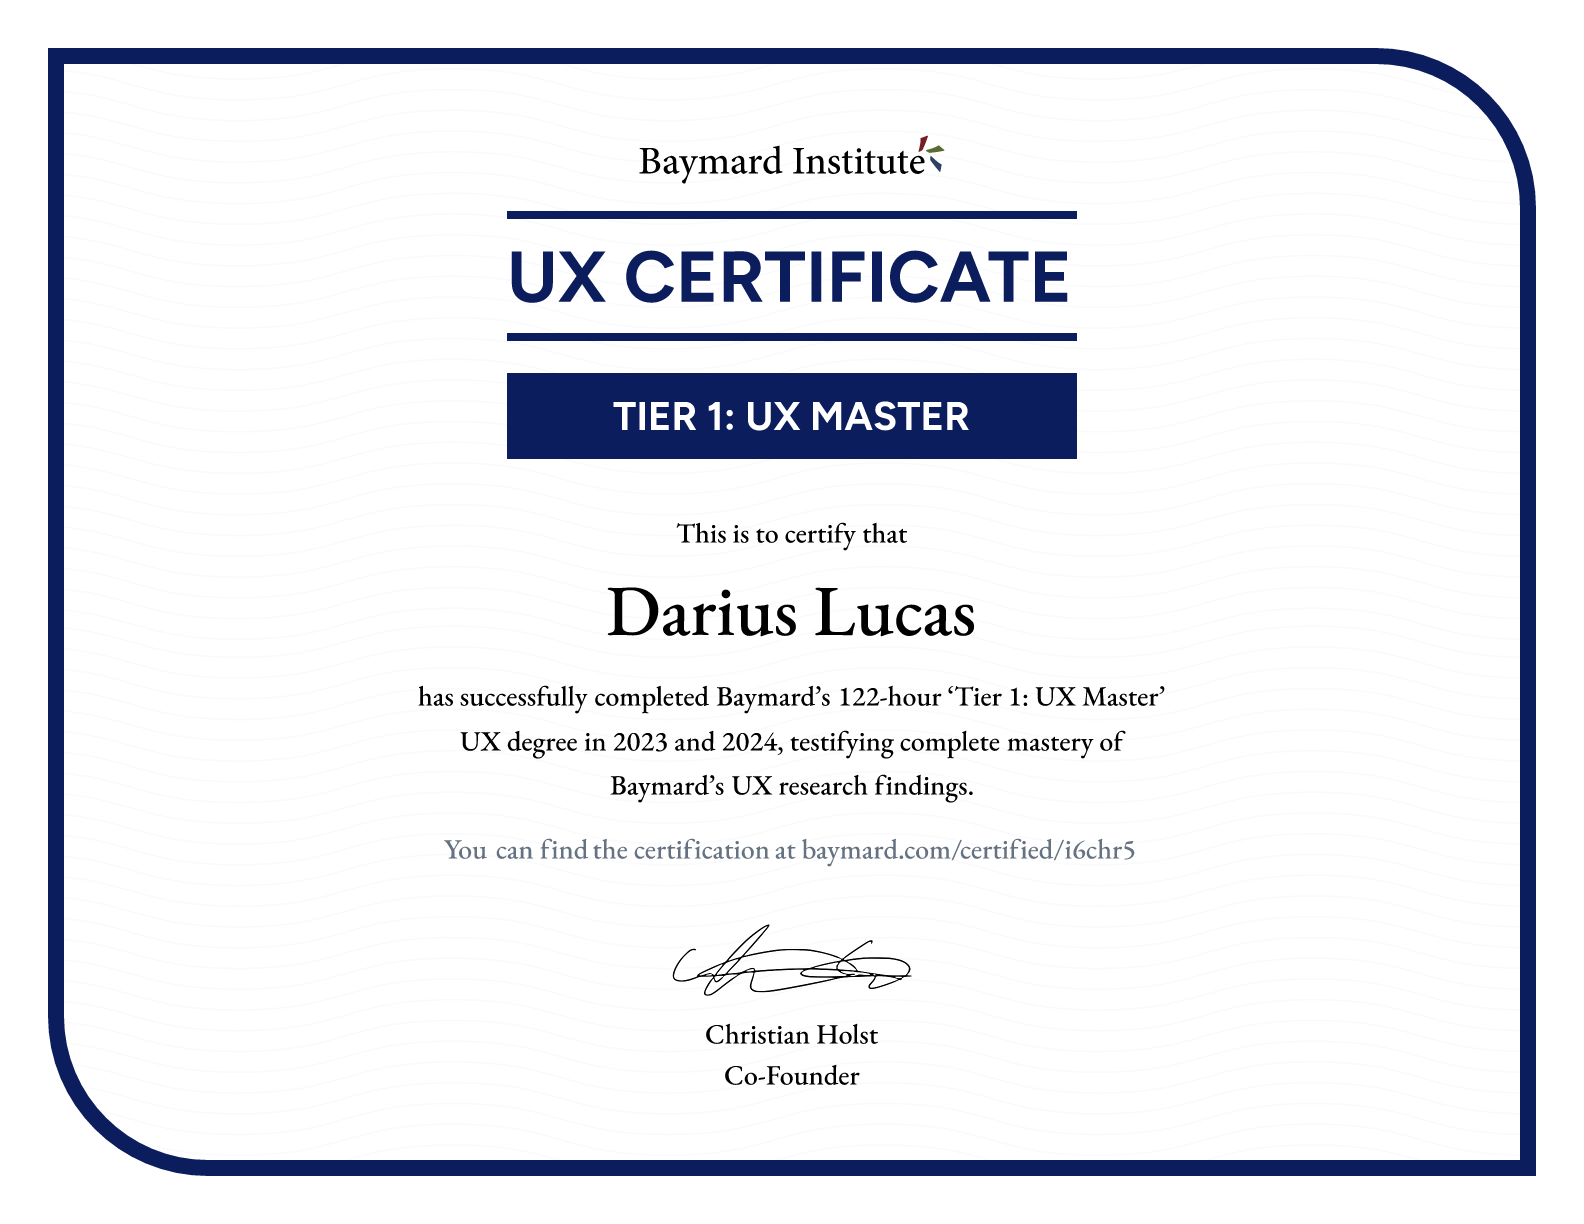 Darius Lucas’s certificate